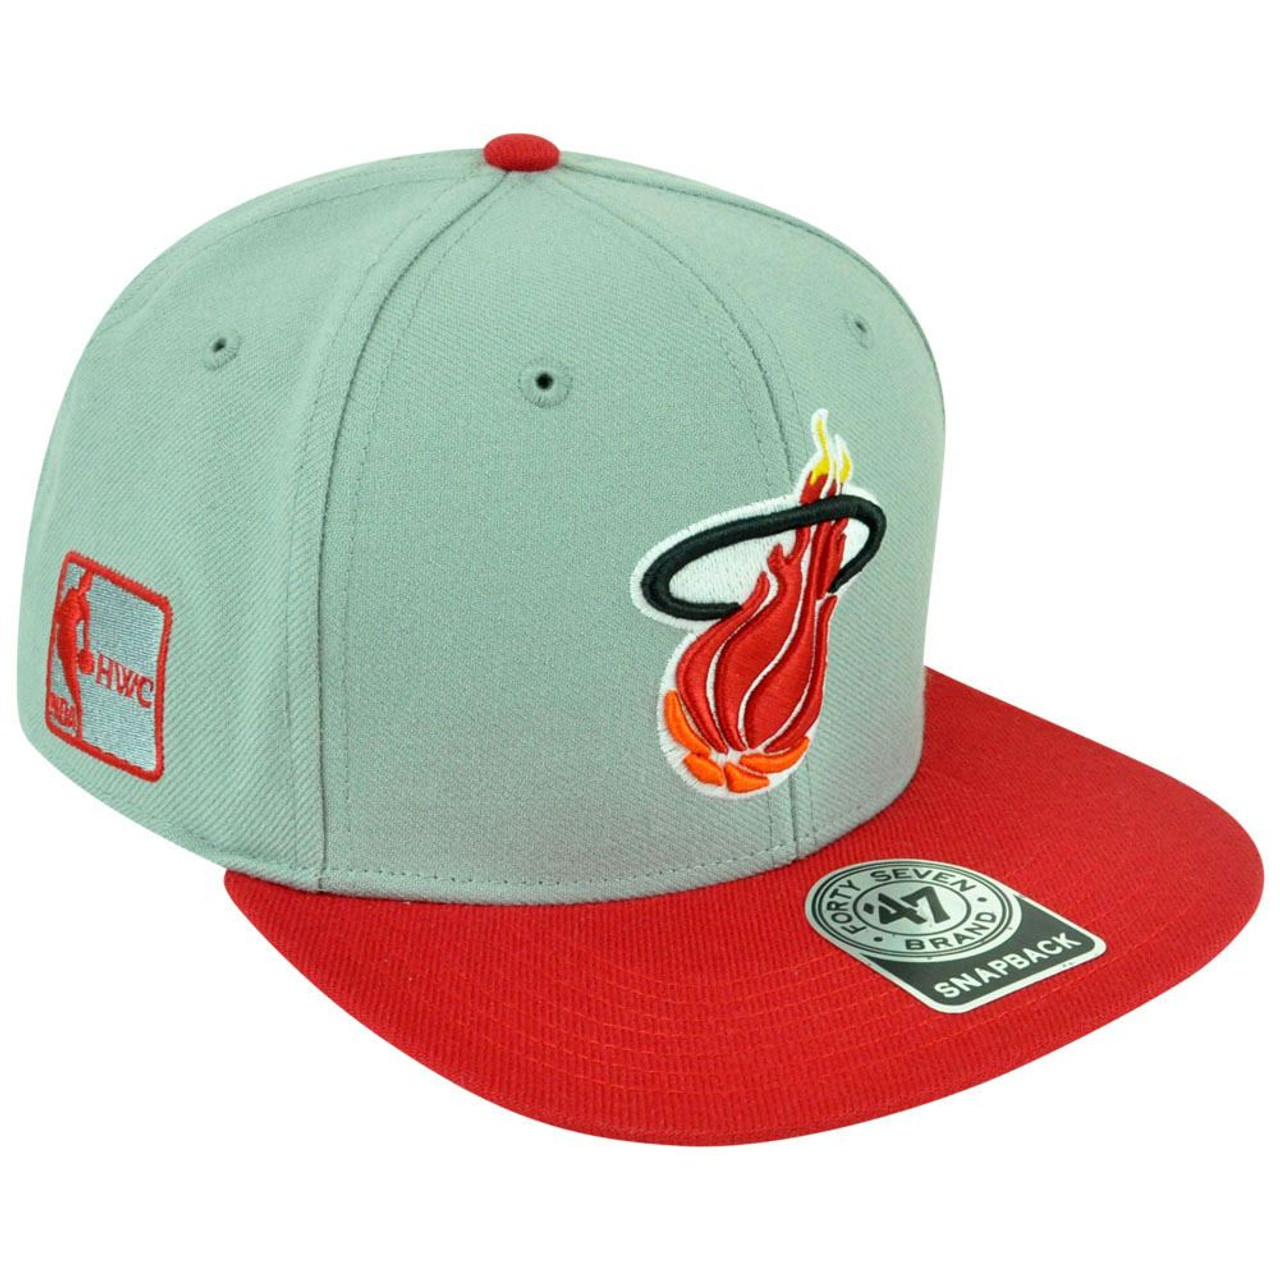 NBA MIAMI HEAT VINTAGE PLAID FLAT BILL HAT CAP